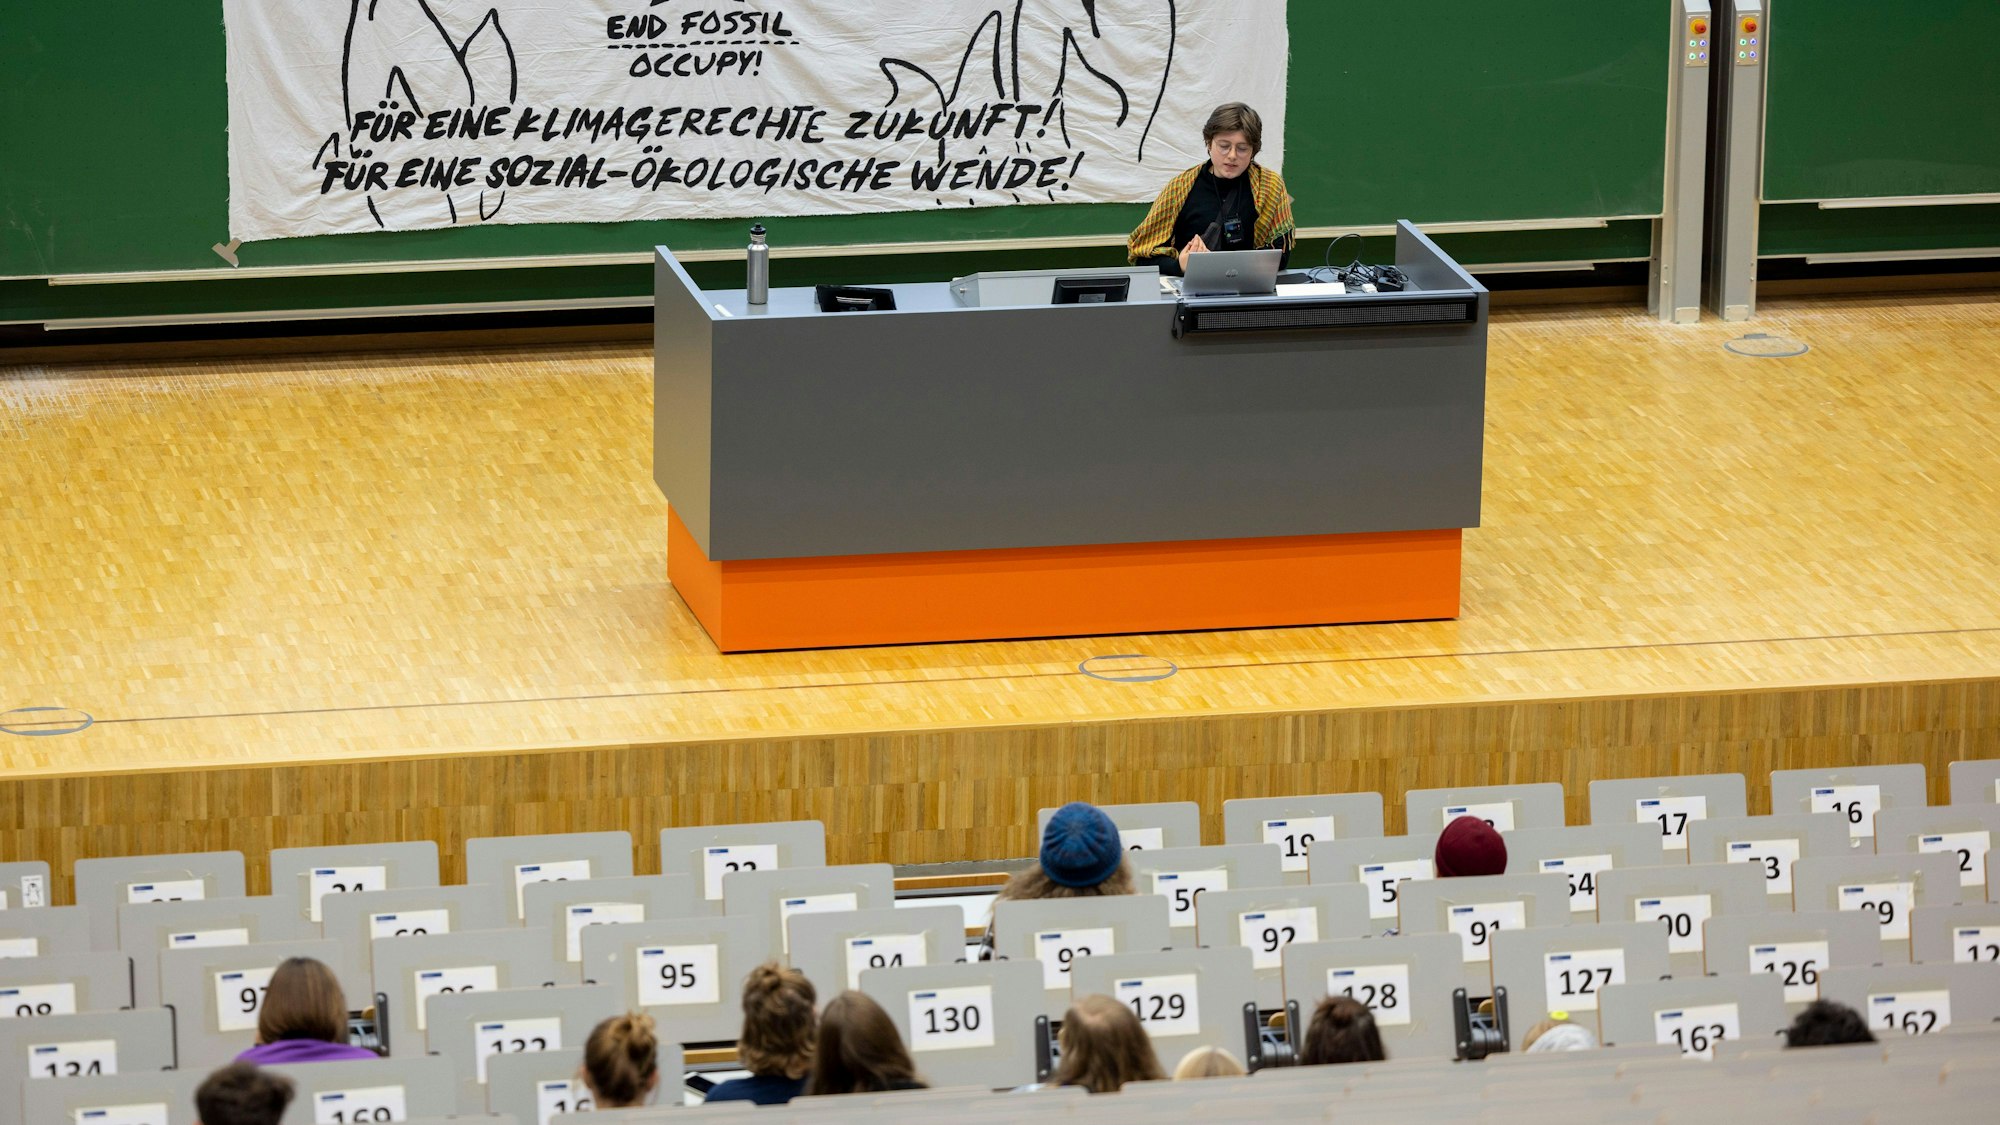 08.11.2022, Nordrhein-Westfalen, Duisburg: Im großen Hörsaal, dem Audimax, veranstalten die Aktivisten alternative Vorlesungen, einige Studierende hören zu.